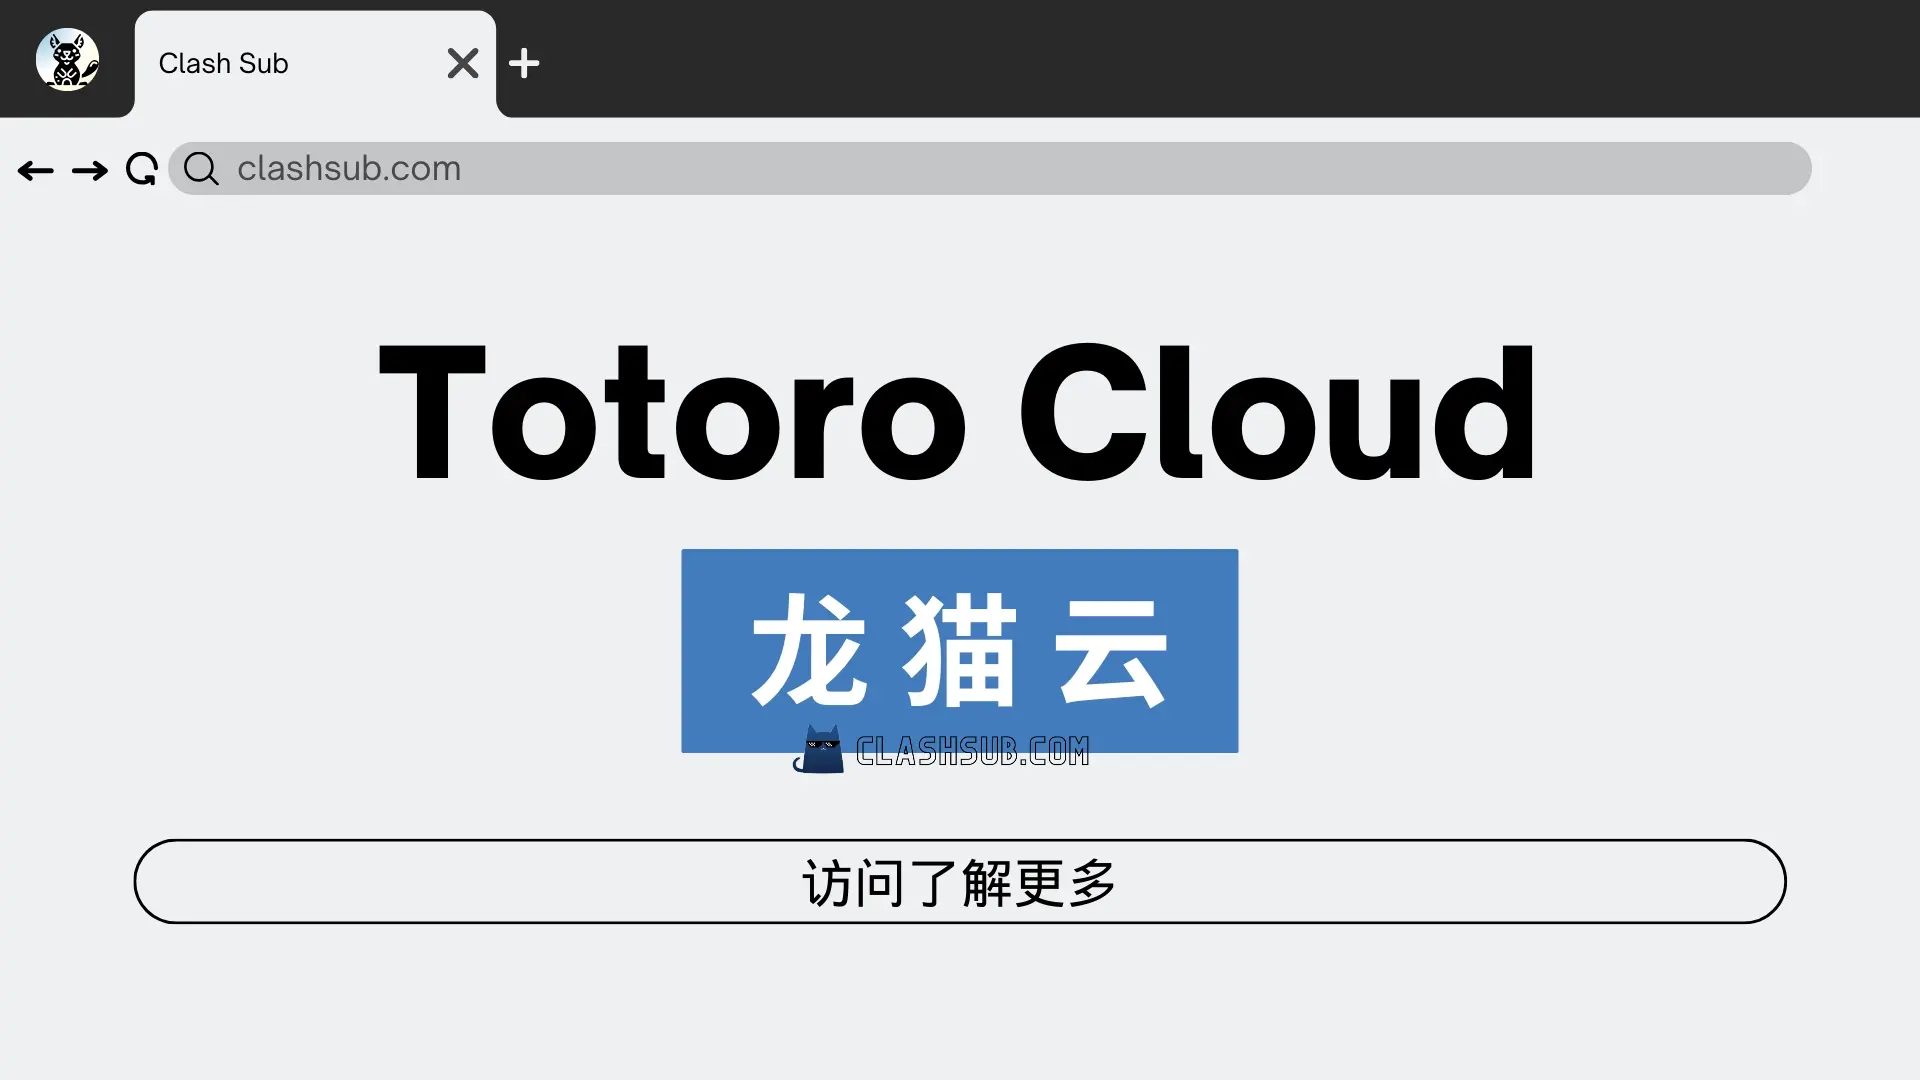 Totoro Cloud 龙猫云机场 ClashSub